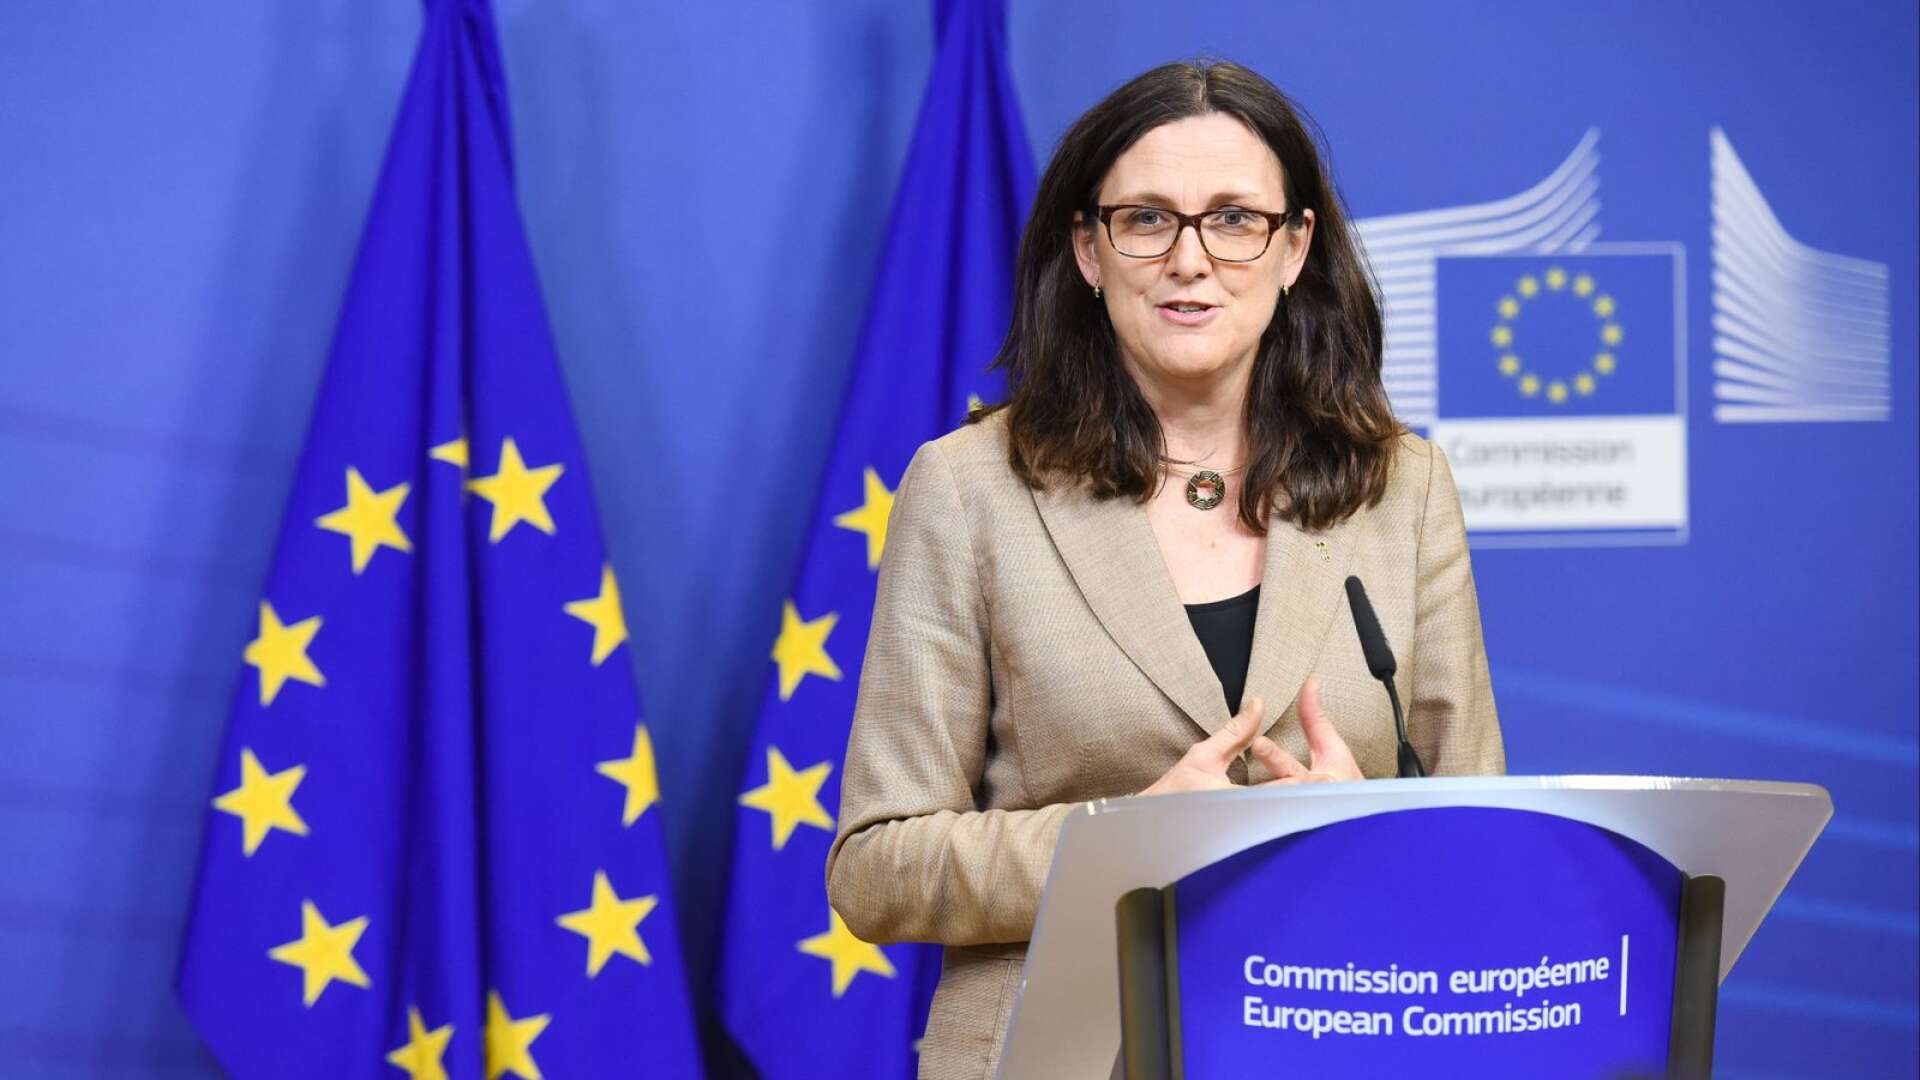 Det aktuella avtalet med Japan är det största som vi har skrivit hittills. Det berör 600 miljoner människor, en tredjedel av världens handel och en fjärdedel av världens samlade BNP, säger Cecilia Malmström.
